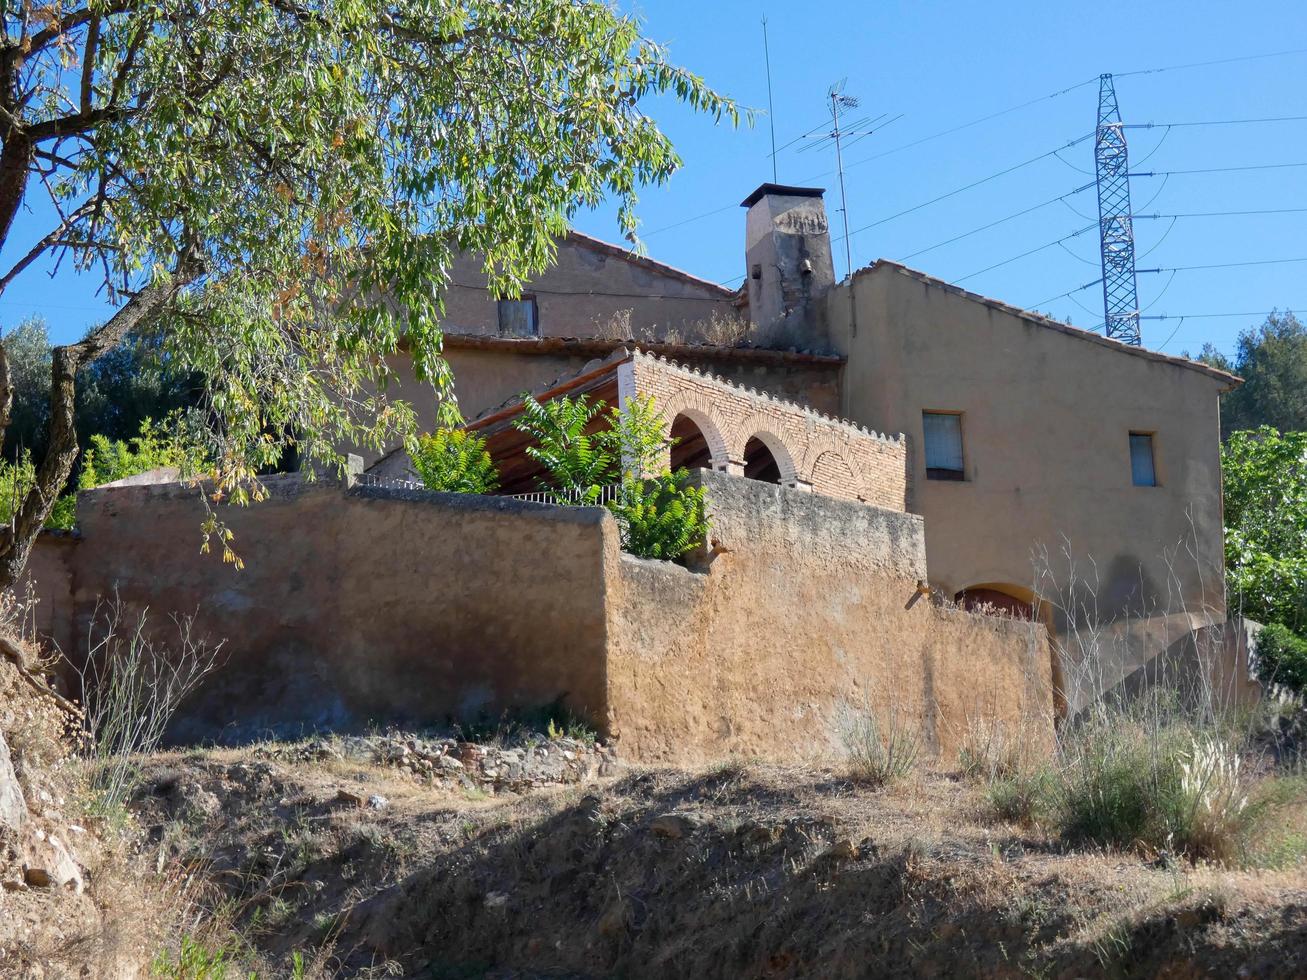 casa típica catalana de montaña en las cercanías de barcelona, españa foto